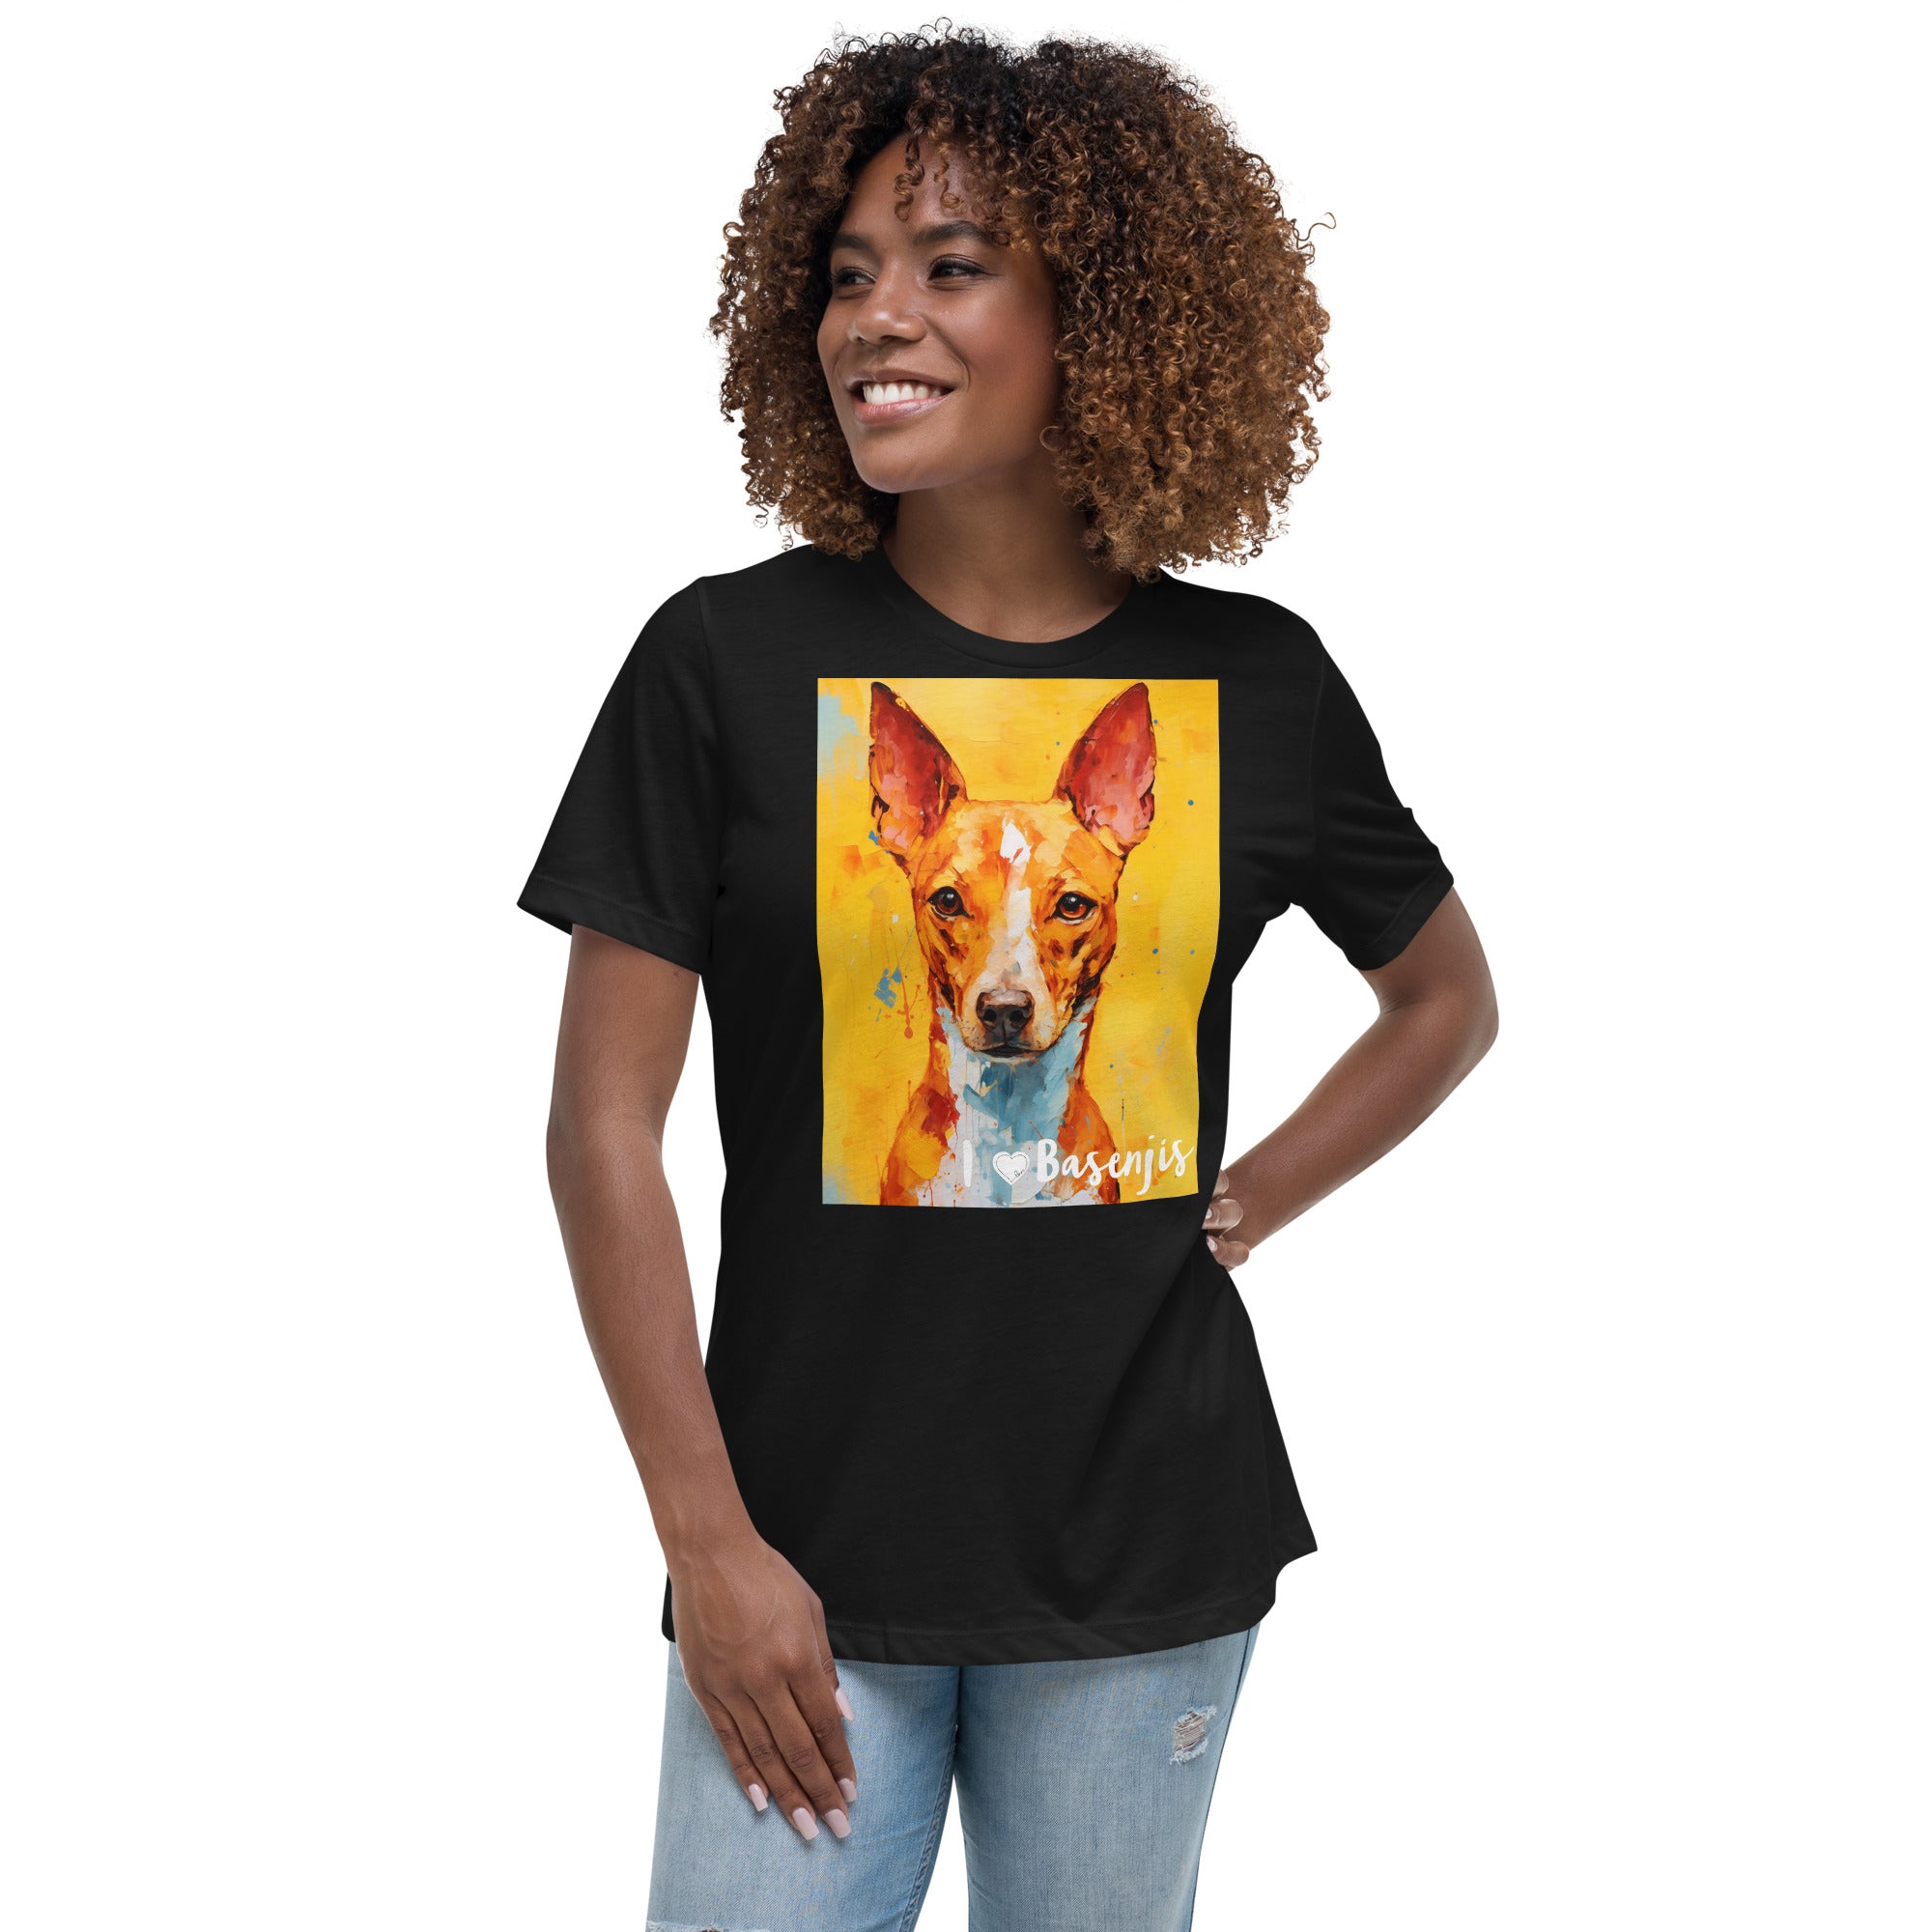 Women's Relaxed T-Shirt - I ❤ Dogs - Basenji